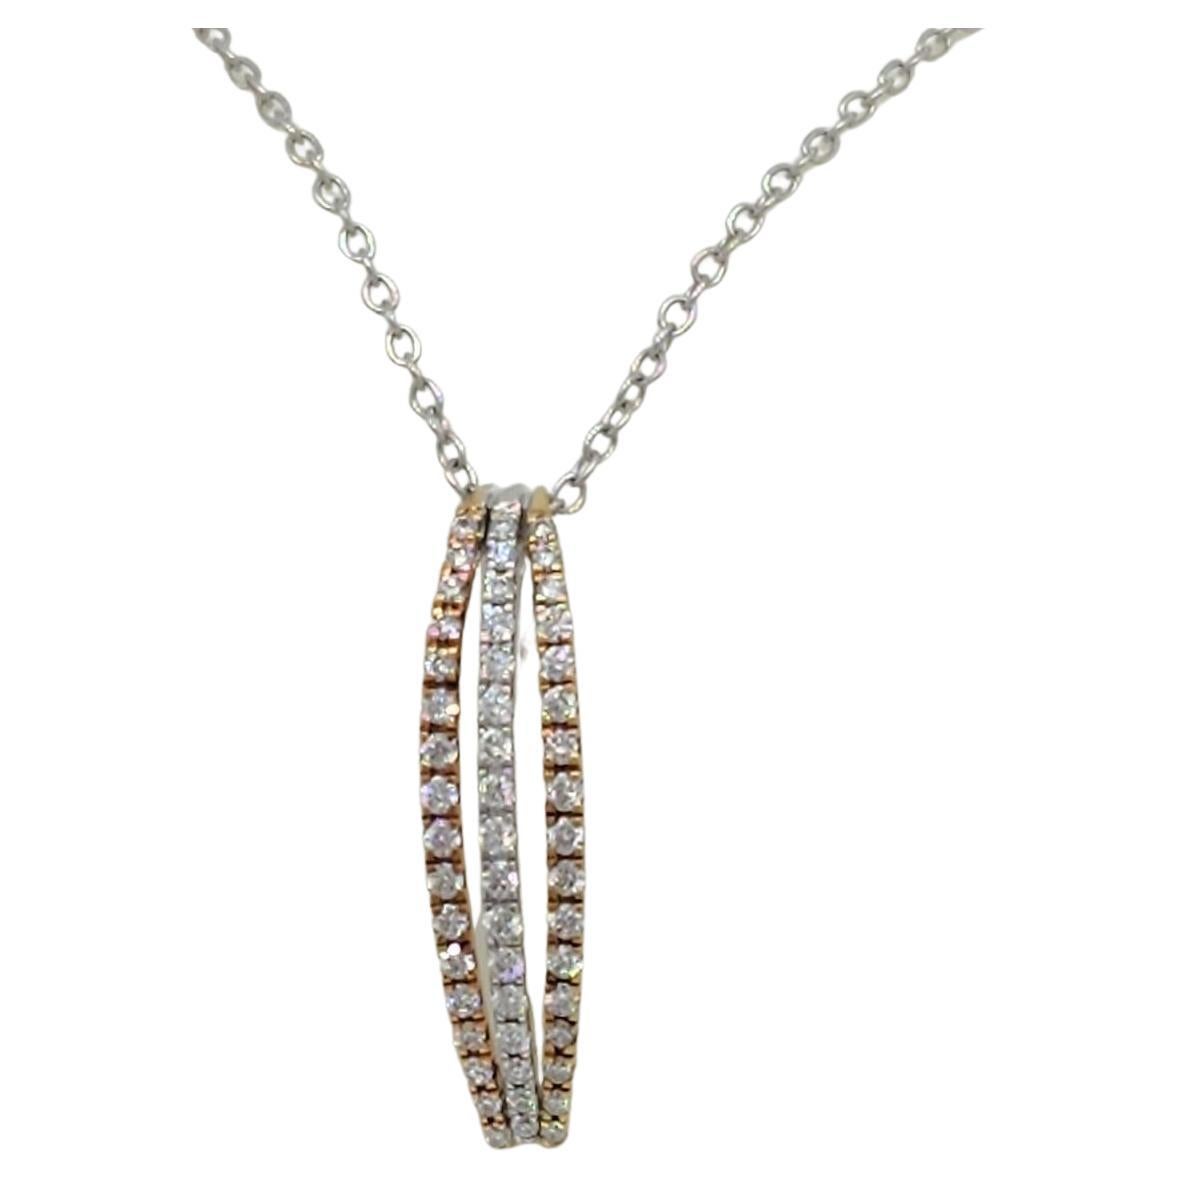 White Diamond 18k Two Tone Gold Pendant Necklace